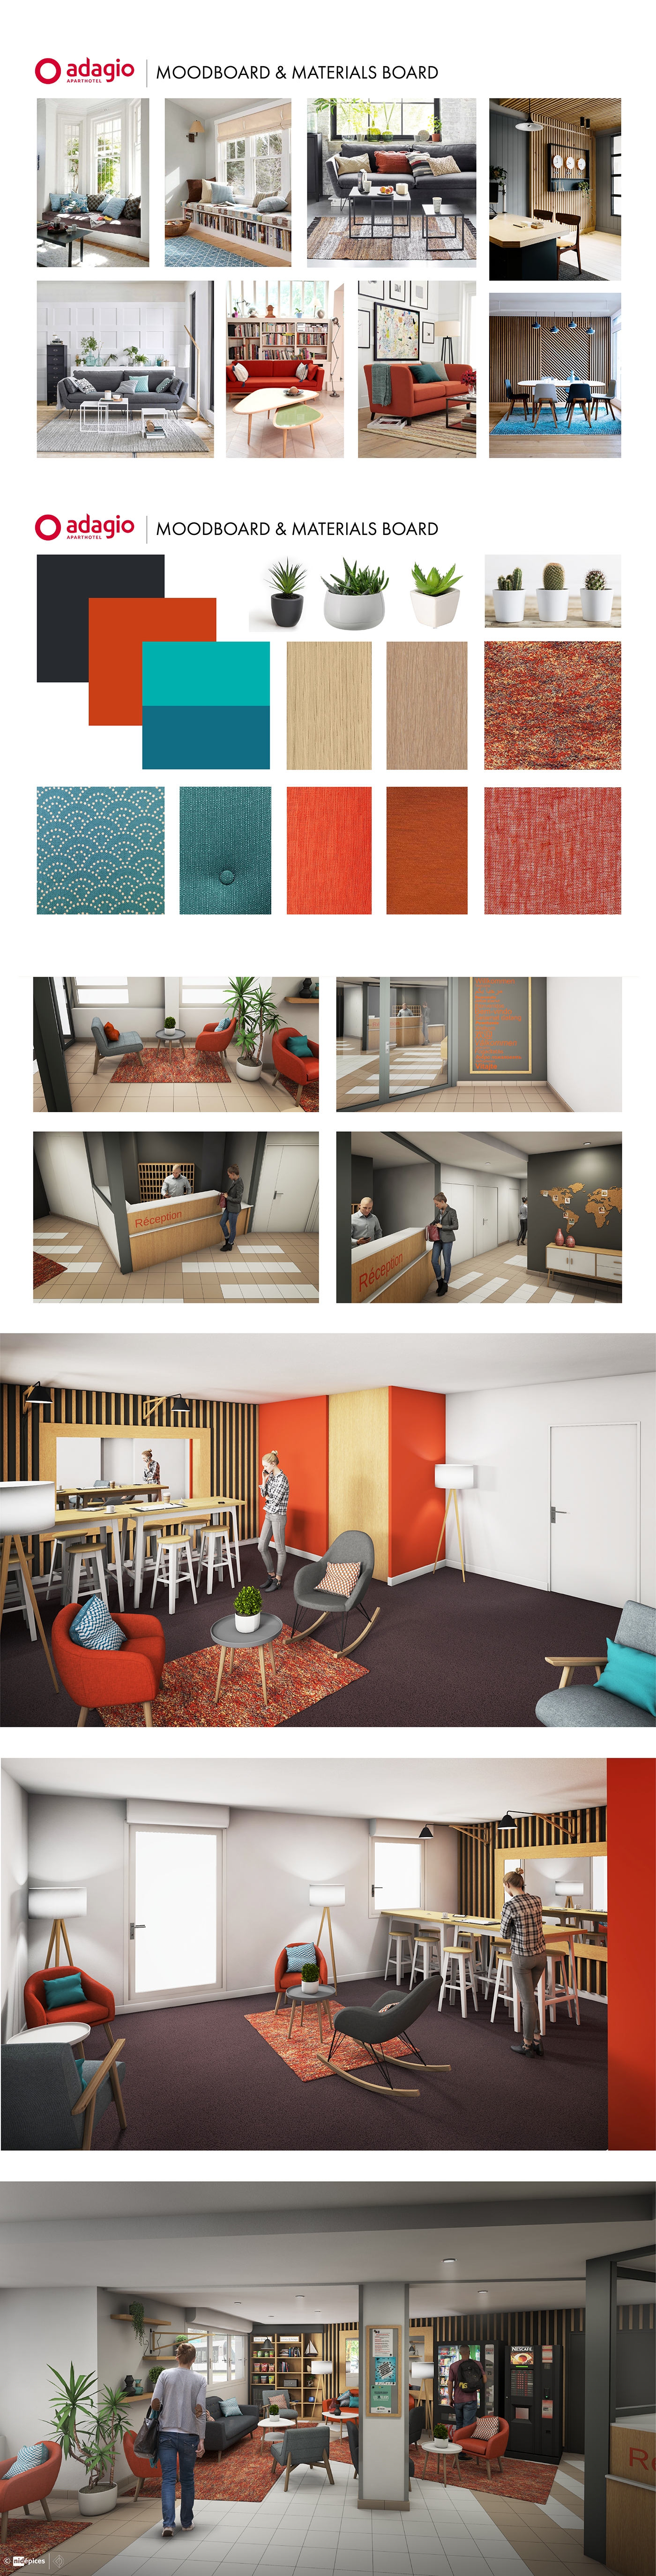 Interior design adagio nidepices architecture room hotel appartment